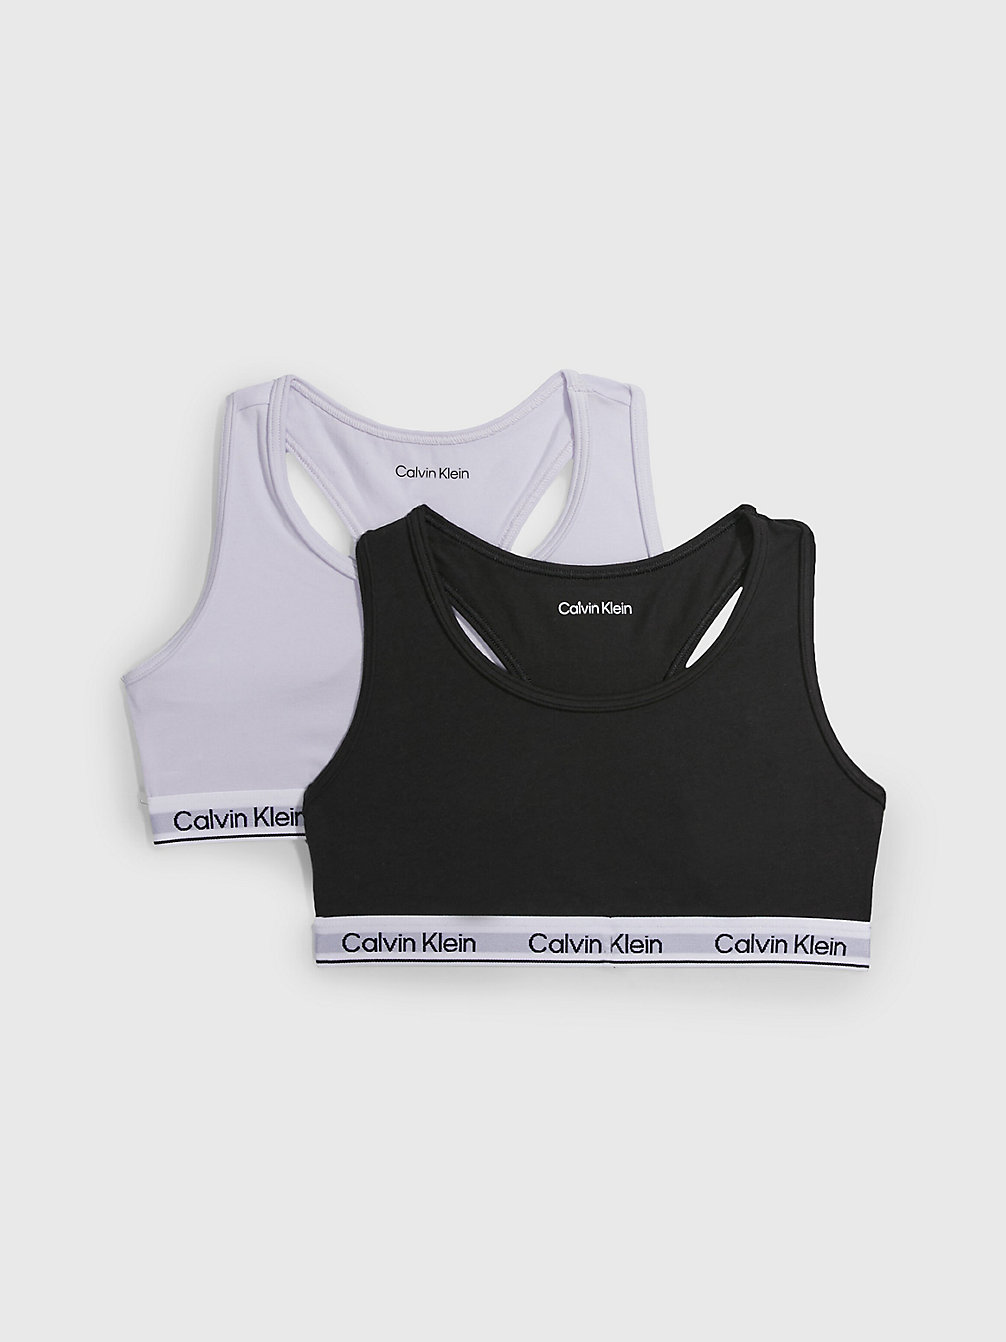 LAVENDERSPLASH/PVHBLACK 2er-Pack Bralettes Für Mädchen - Modern Cotton undefined girls Calvin Klein